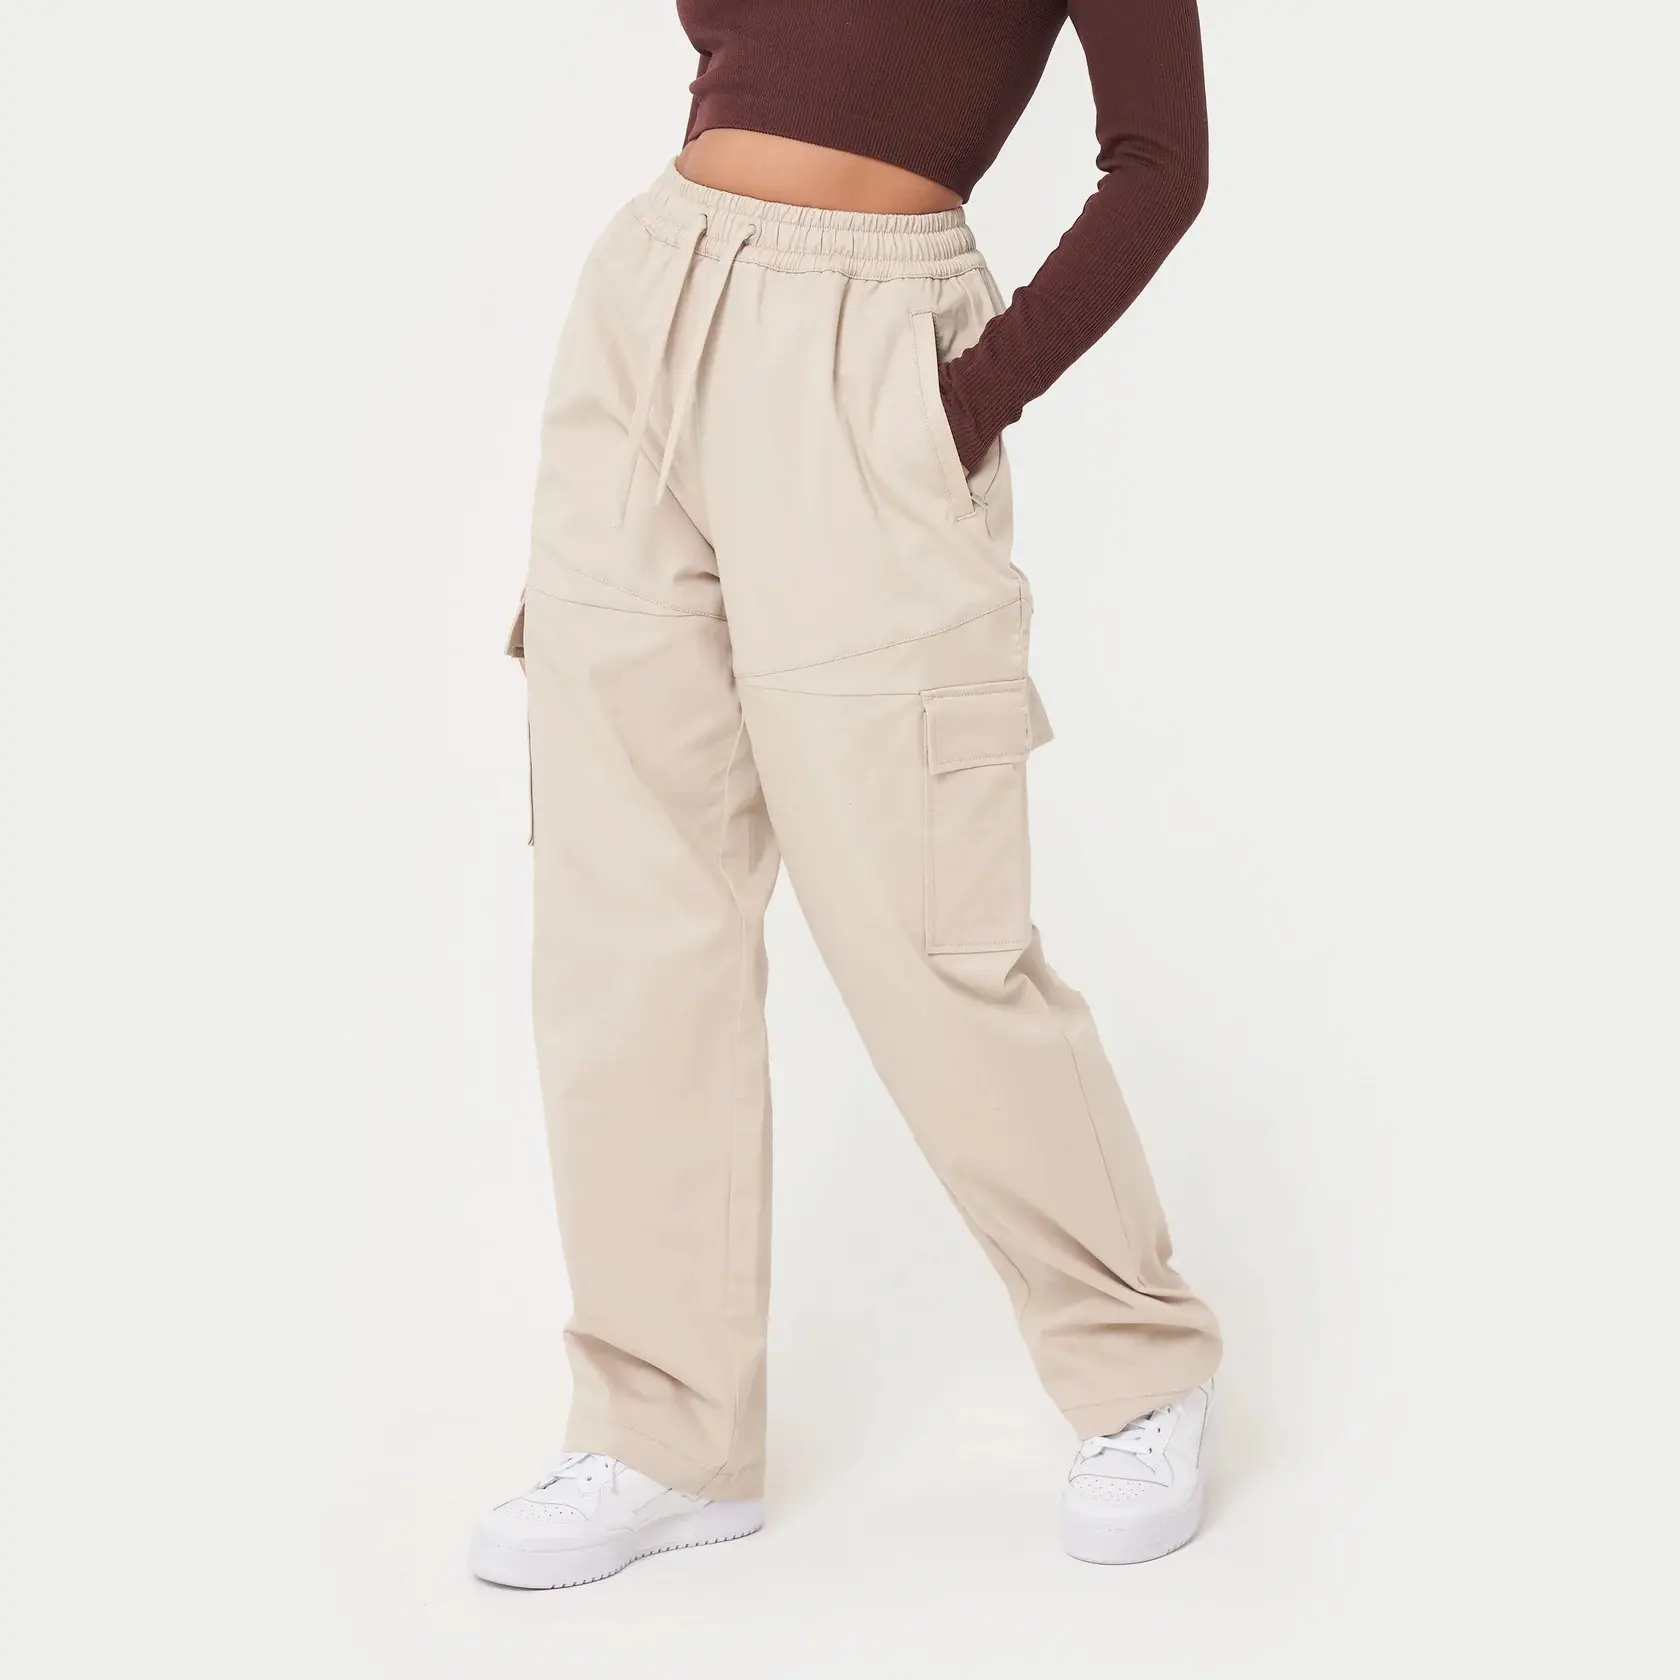 कस्टम जेबें महिला streetwear प्लस आकार बैगी के साथ कार्गो पैंट खाकी पैंट पसीना कार्गो पैंट जॉगर्स महिलाओं के लिए